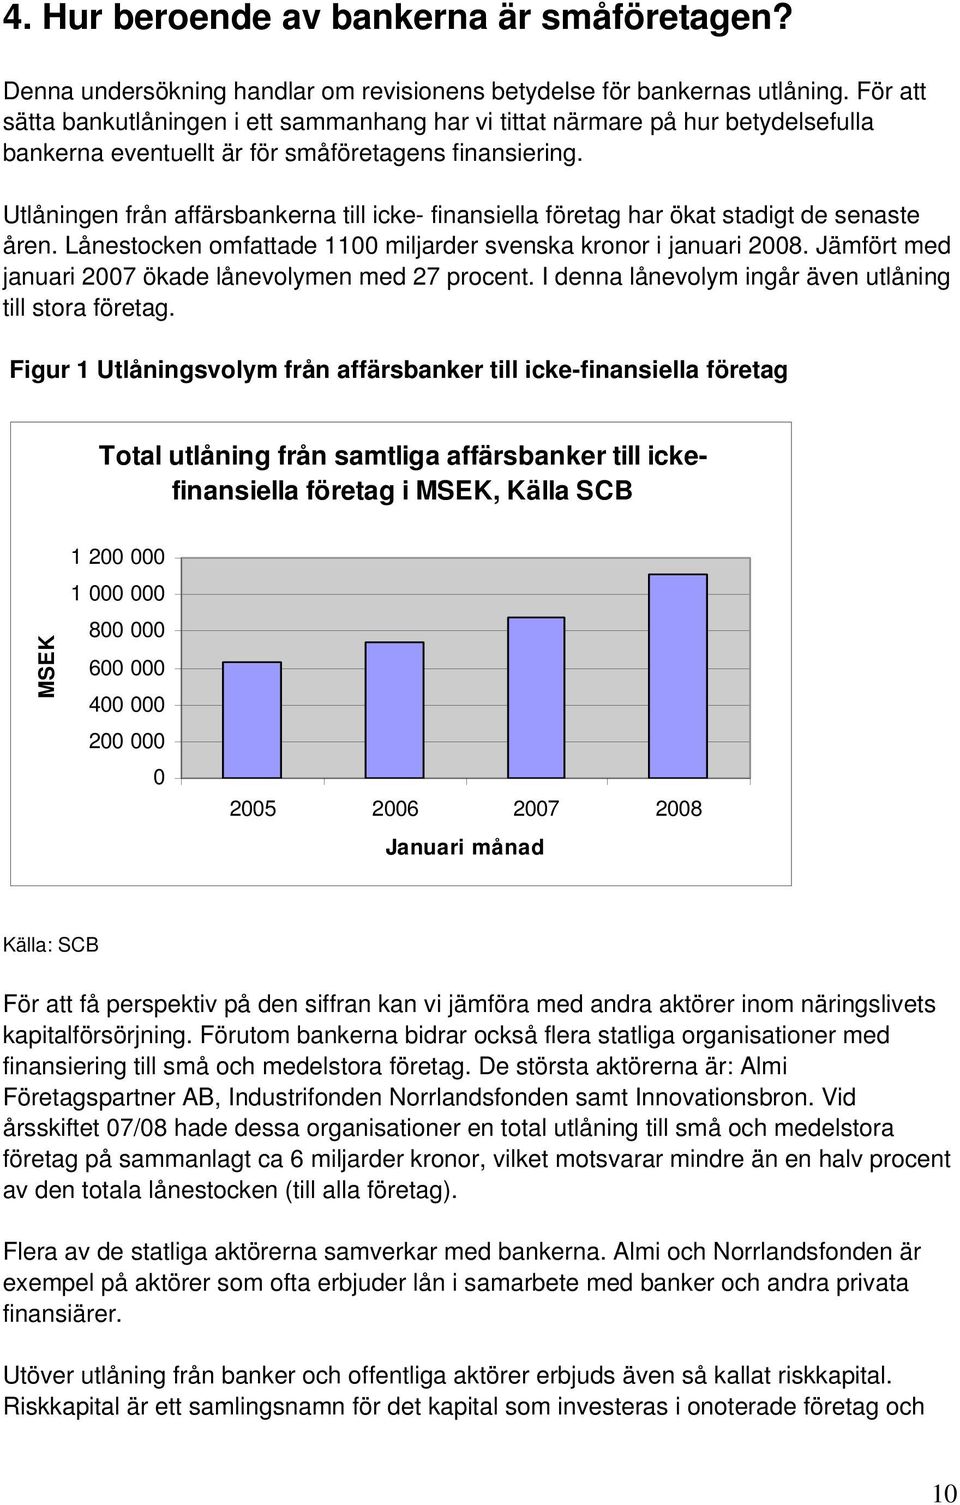 Utlåningen från affärsbankerna till icke- finansiella företag har ökat stadigt de senaste åren. Lånestocken omfattade 1100 miljarder svenska kronor i januari 2008.